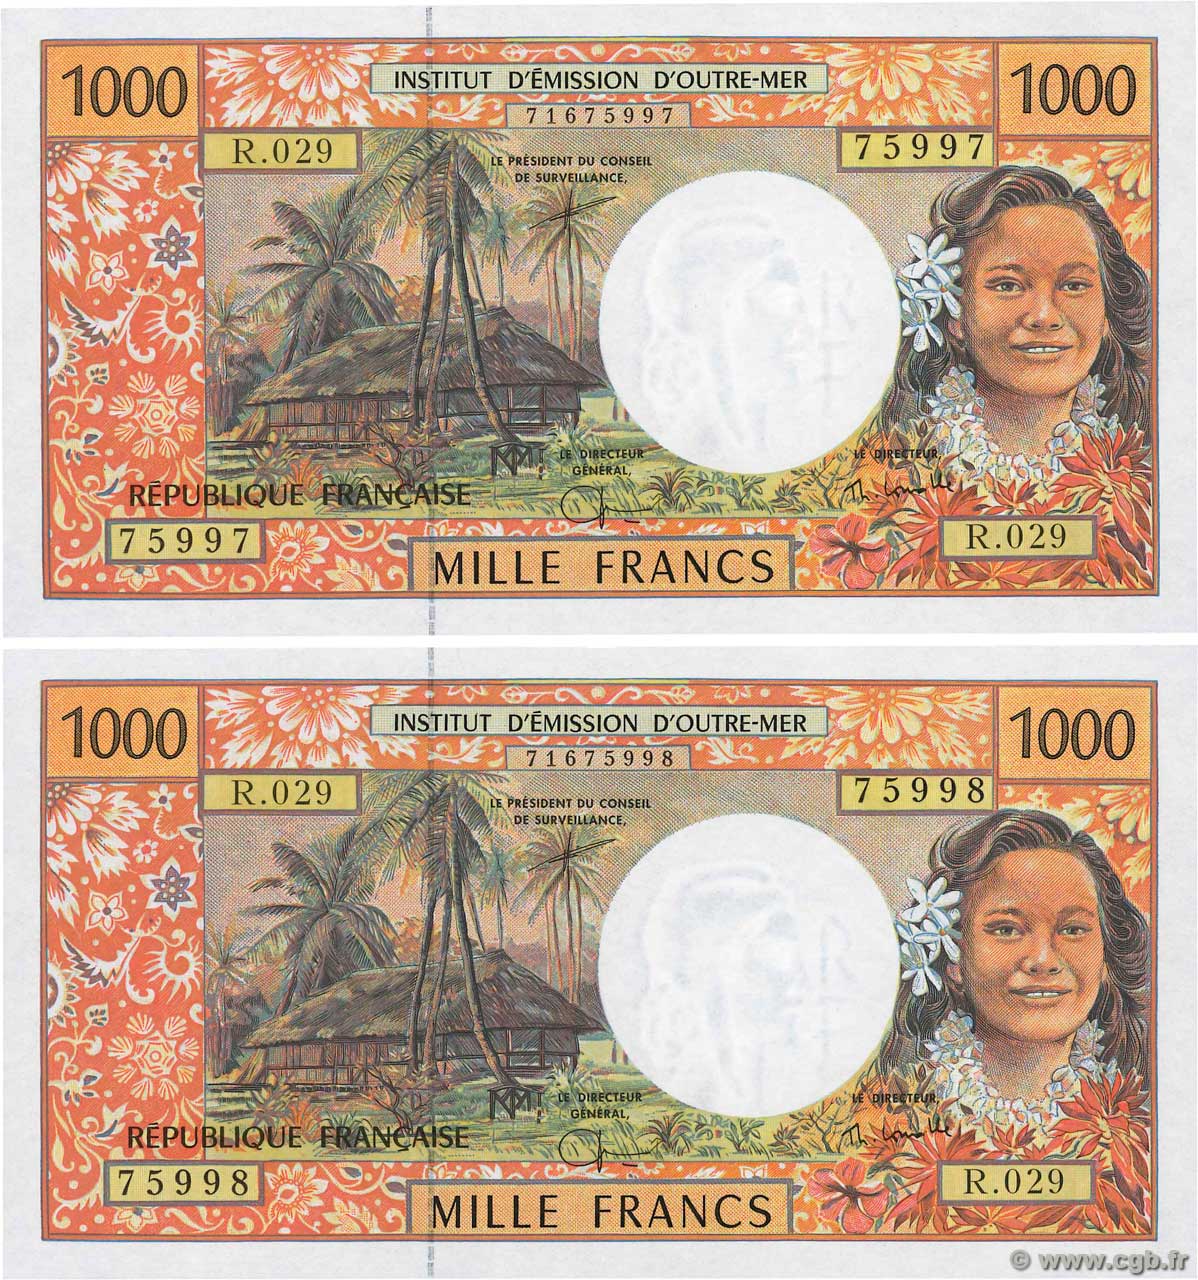 1000 Francs Consécutifs FRENCH PACIFIC TERRITORIES  2003 P.02h UNC-